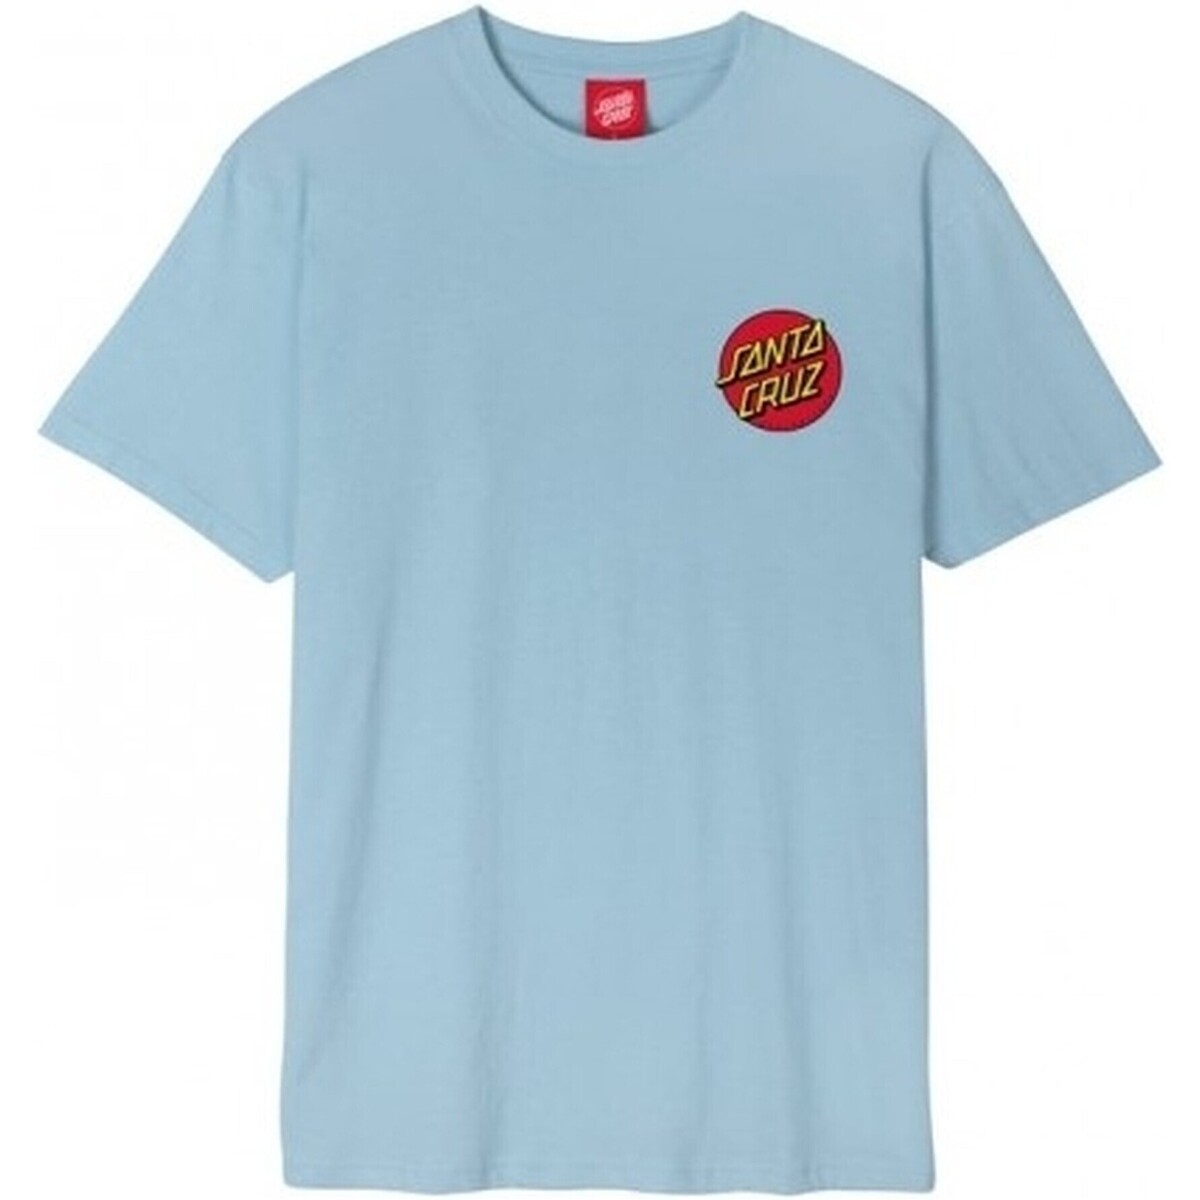 textil Herr T-shirts Santa Cruz  Blå